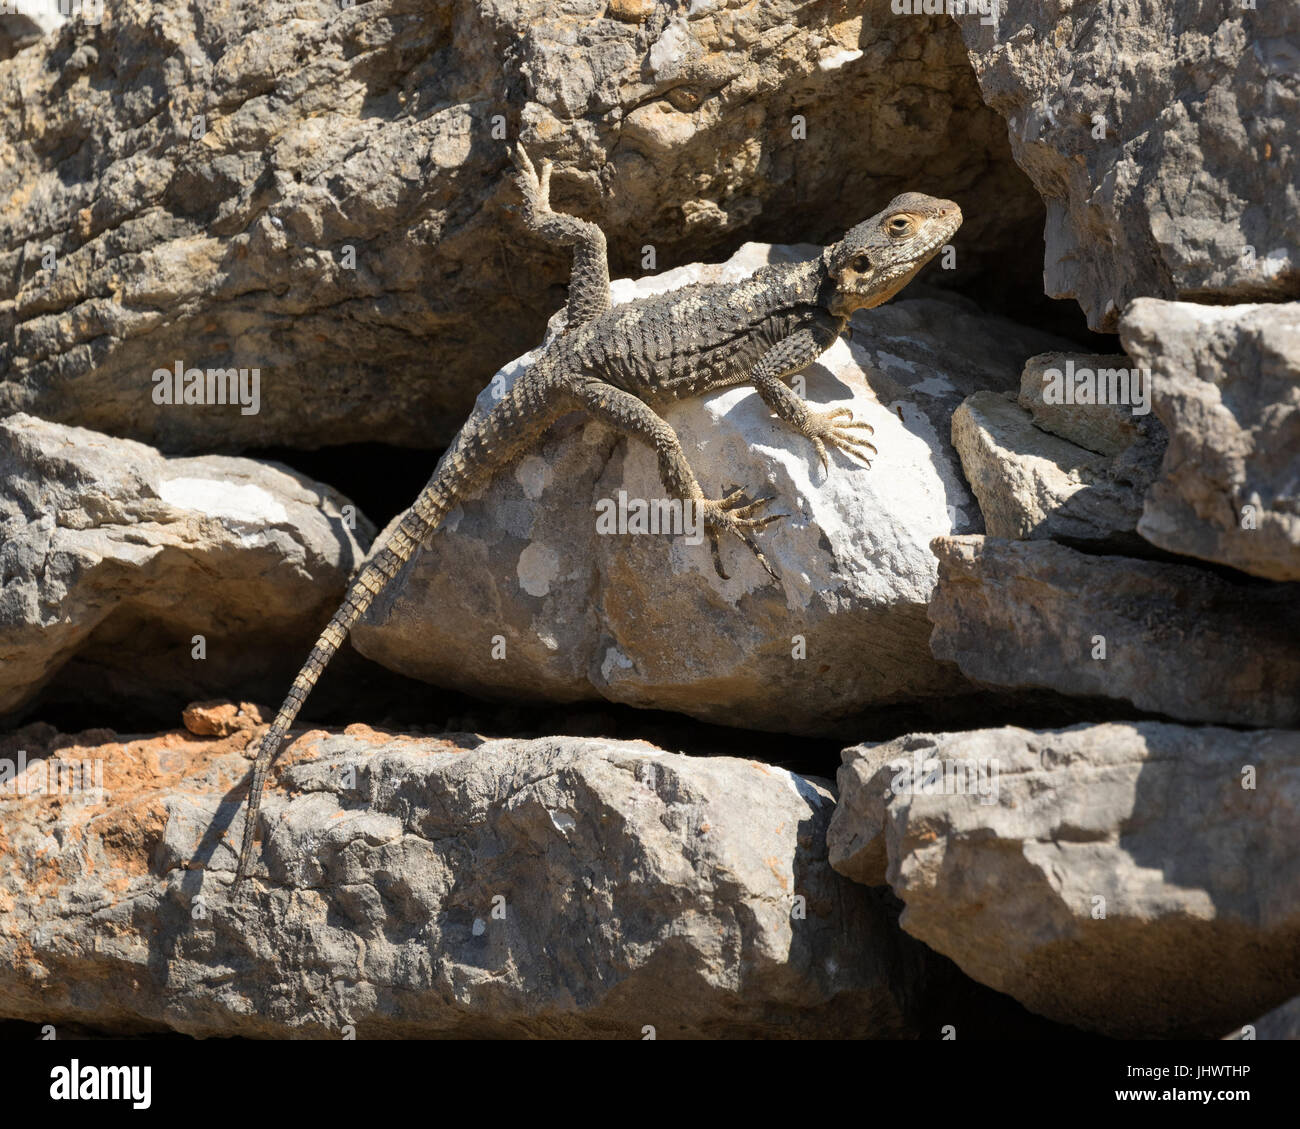 L'île de Symi, sud de la mer Egée, Grèce - lézards peuvent souvent être vus sur les murs, dans les arbres et sur le sol, mais hésitent souvent de l'homme Banque D'Images